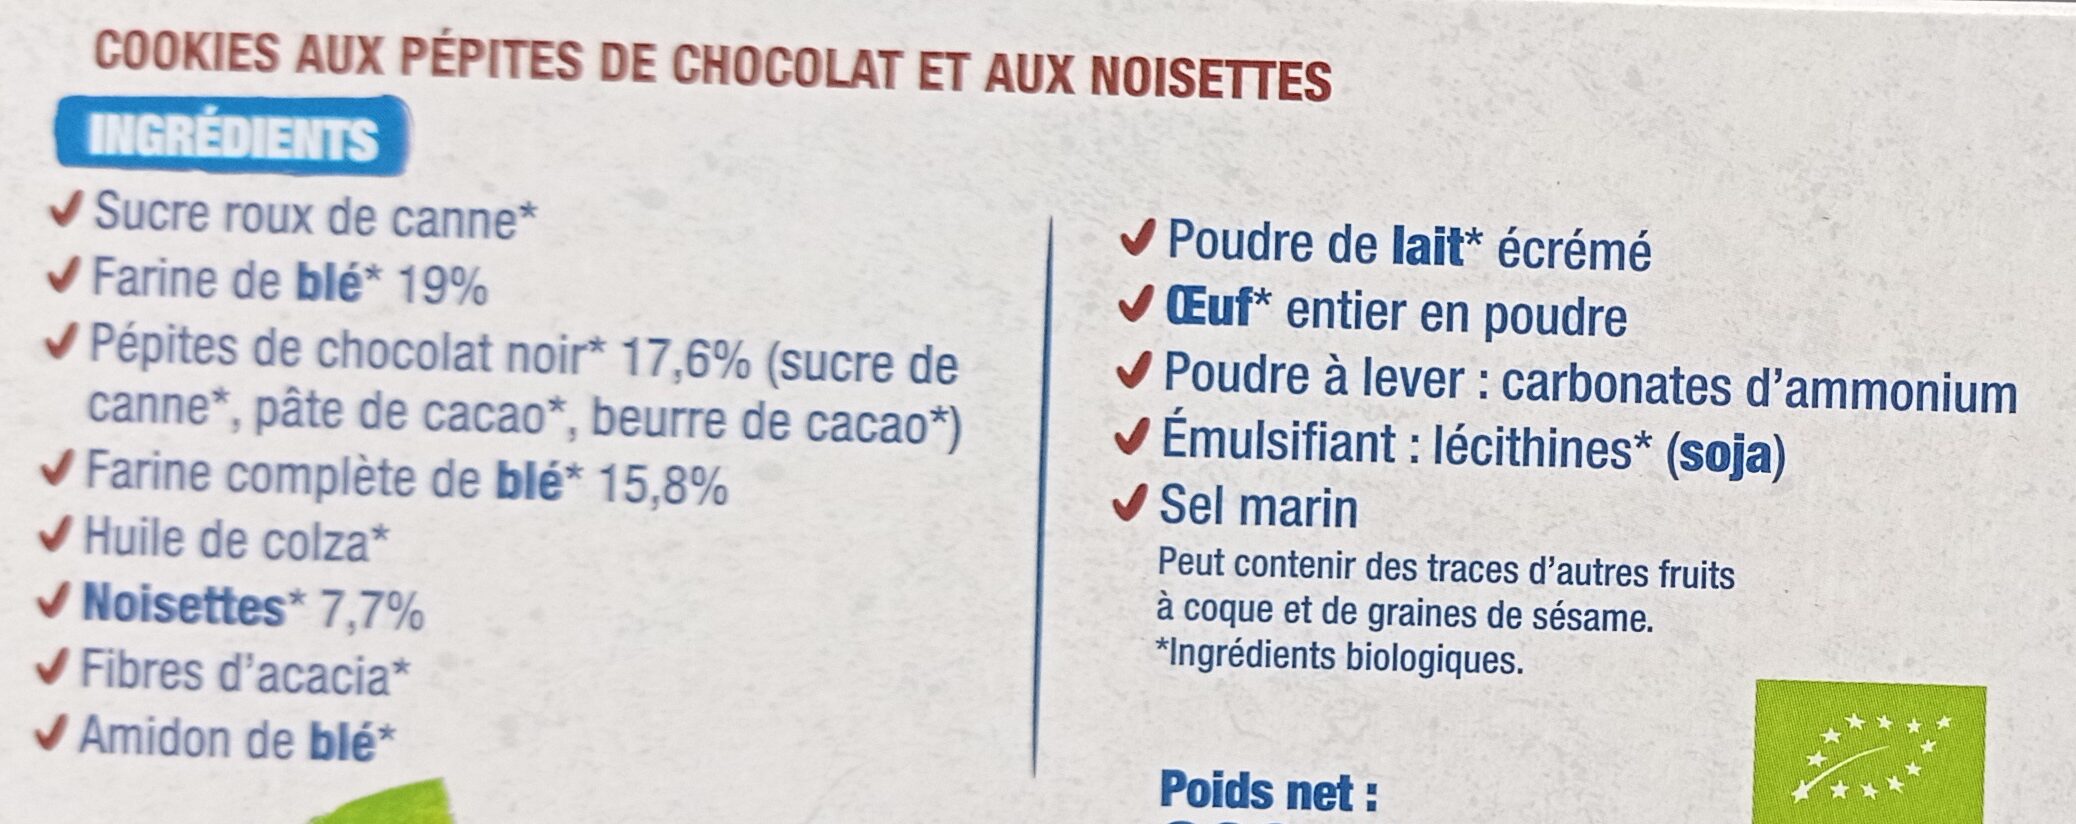 Le cookie Chocolat noisettes - Ingrédients